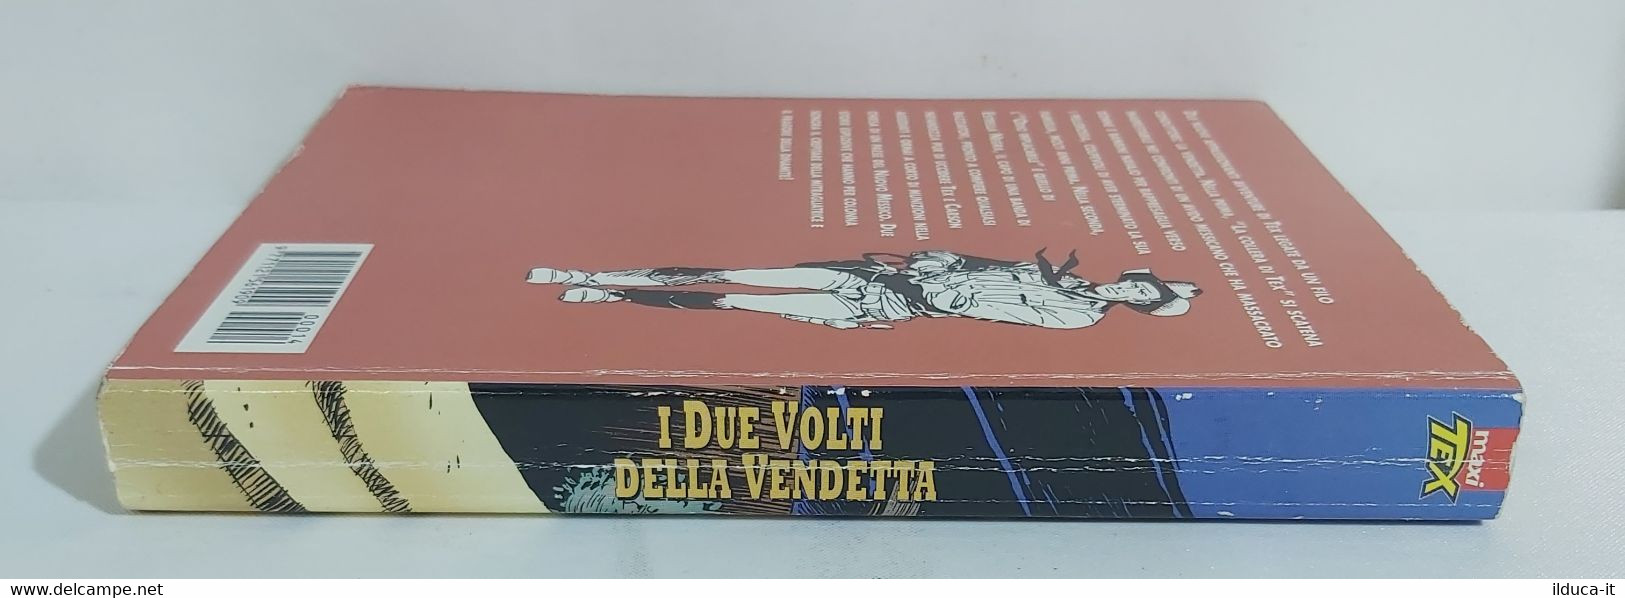 I101654 Maxi TEX N. 14-bis - I Due Volti Della Vendetta - Bonelli 2000 - Bonelli